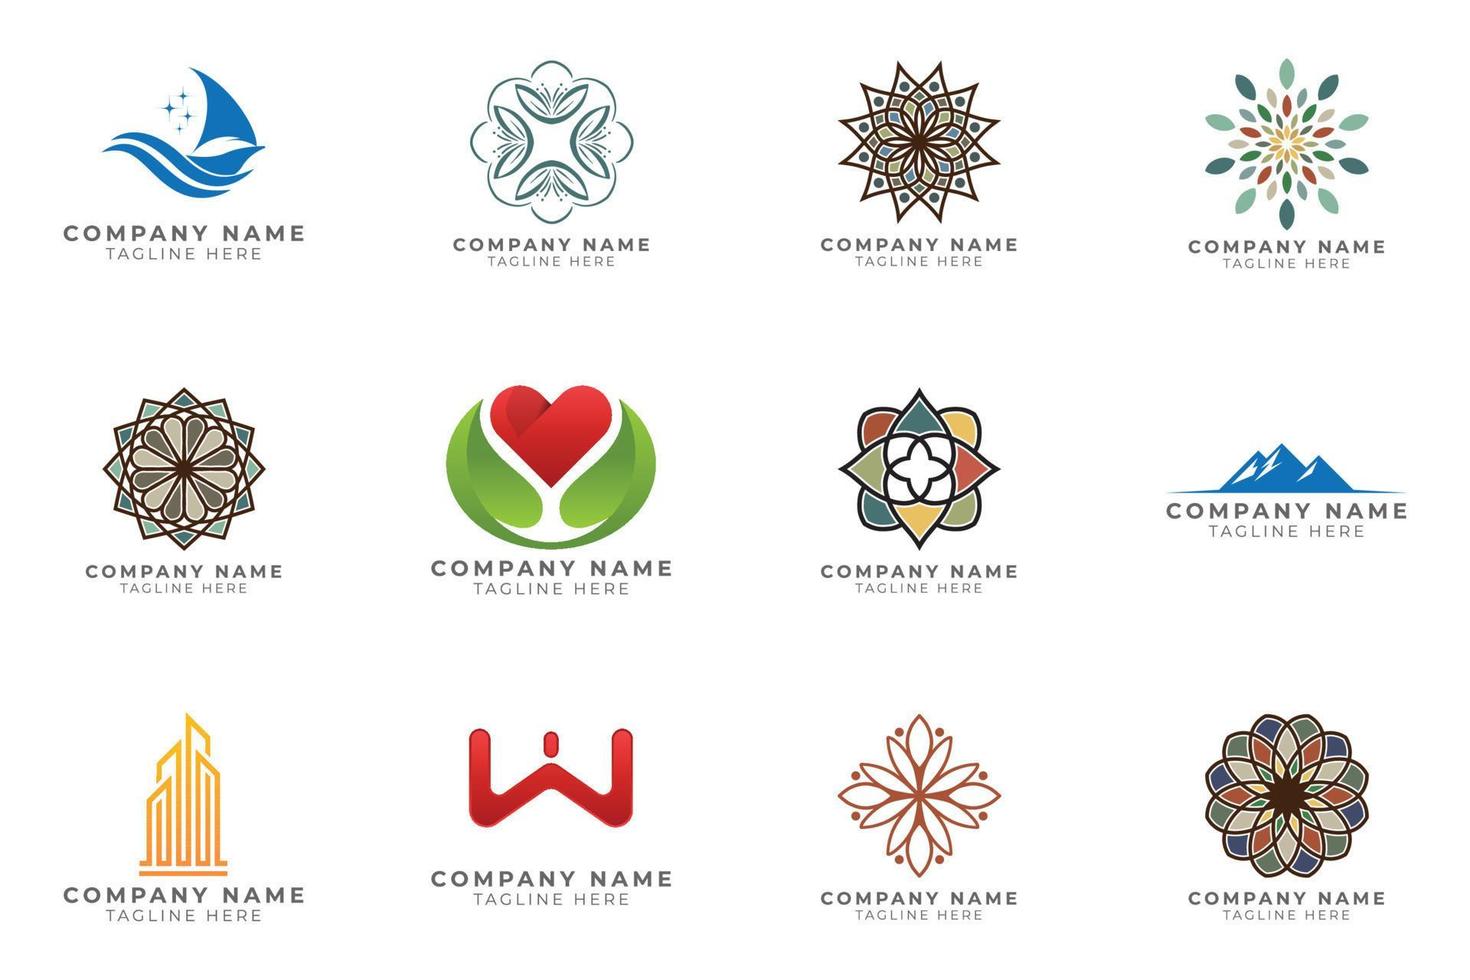 ensemble de logos collection d'idées de marque moderne et créative pour entreprise. vecteur